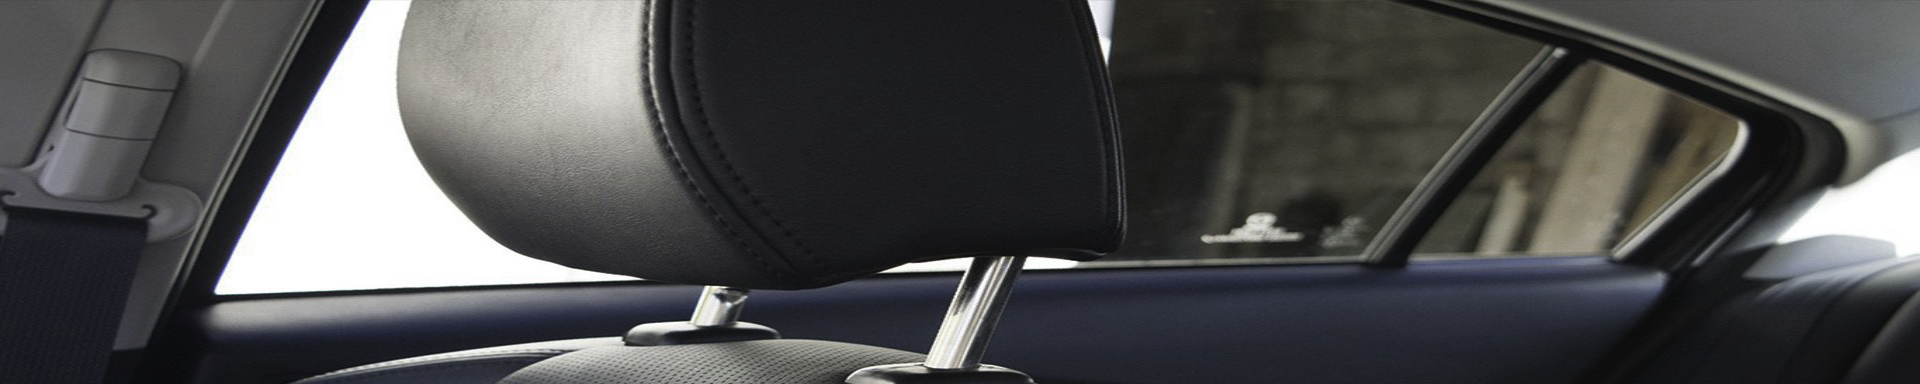 Seat Headrests | GarageAndFab.com | Munro Industries gf-100103051213